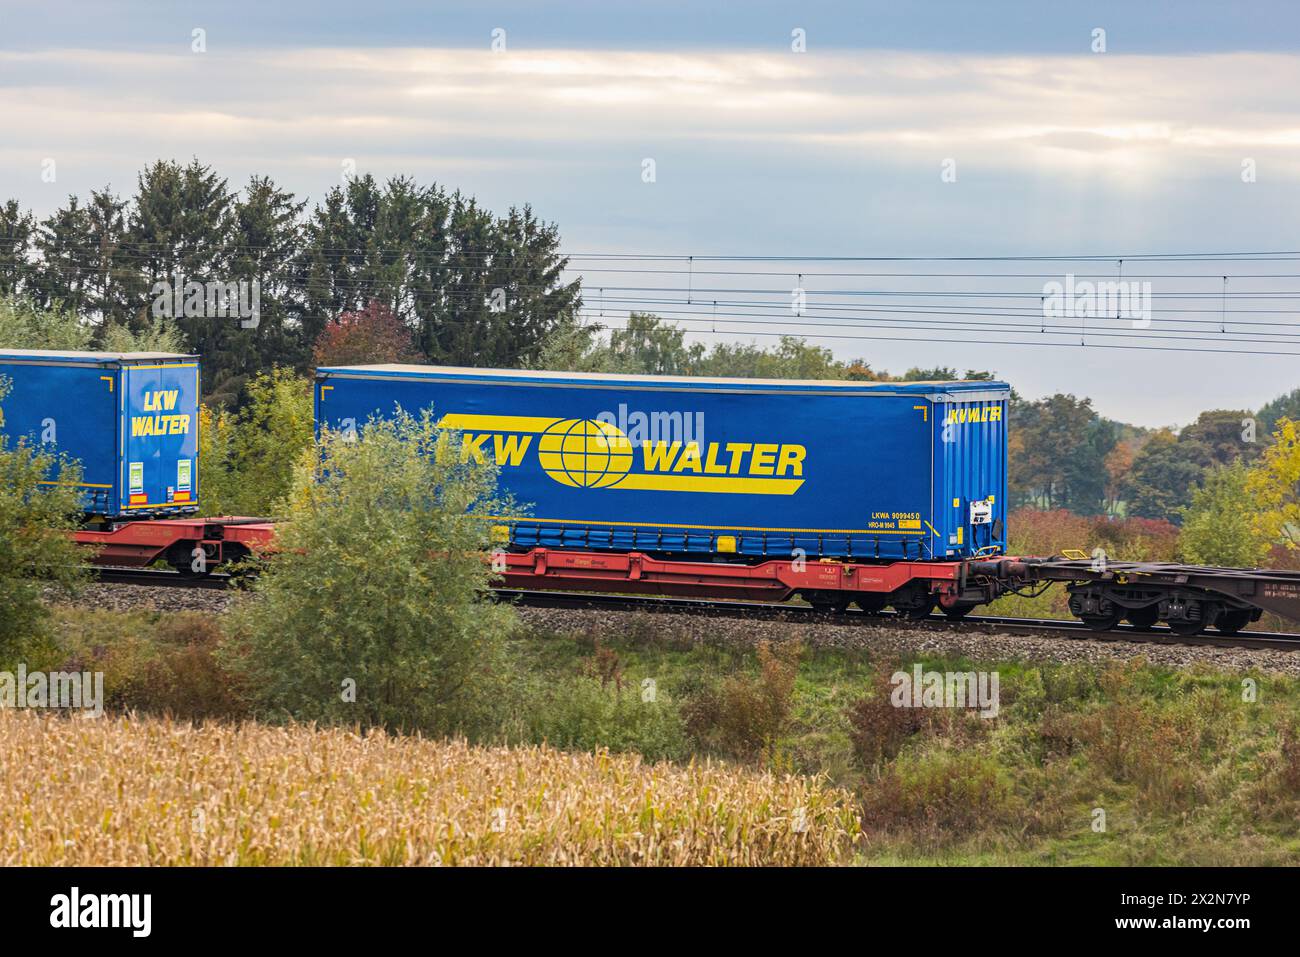 Die firma LKW Walter Hat ihre Anhänger auf einen Zug verladen, diese werden suon damit transportiert. Hier gerade auf der Zugsstrecke zwischen München Foto Stock